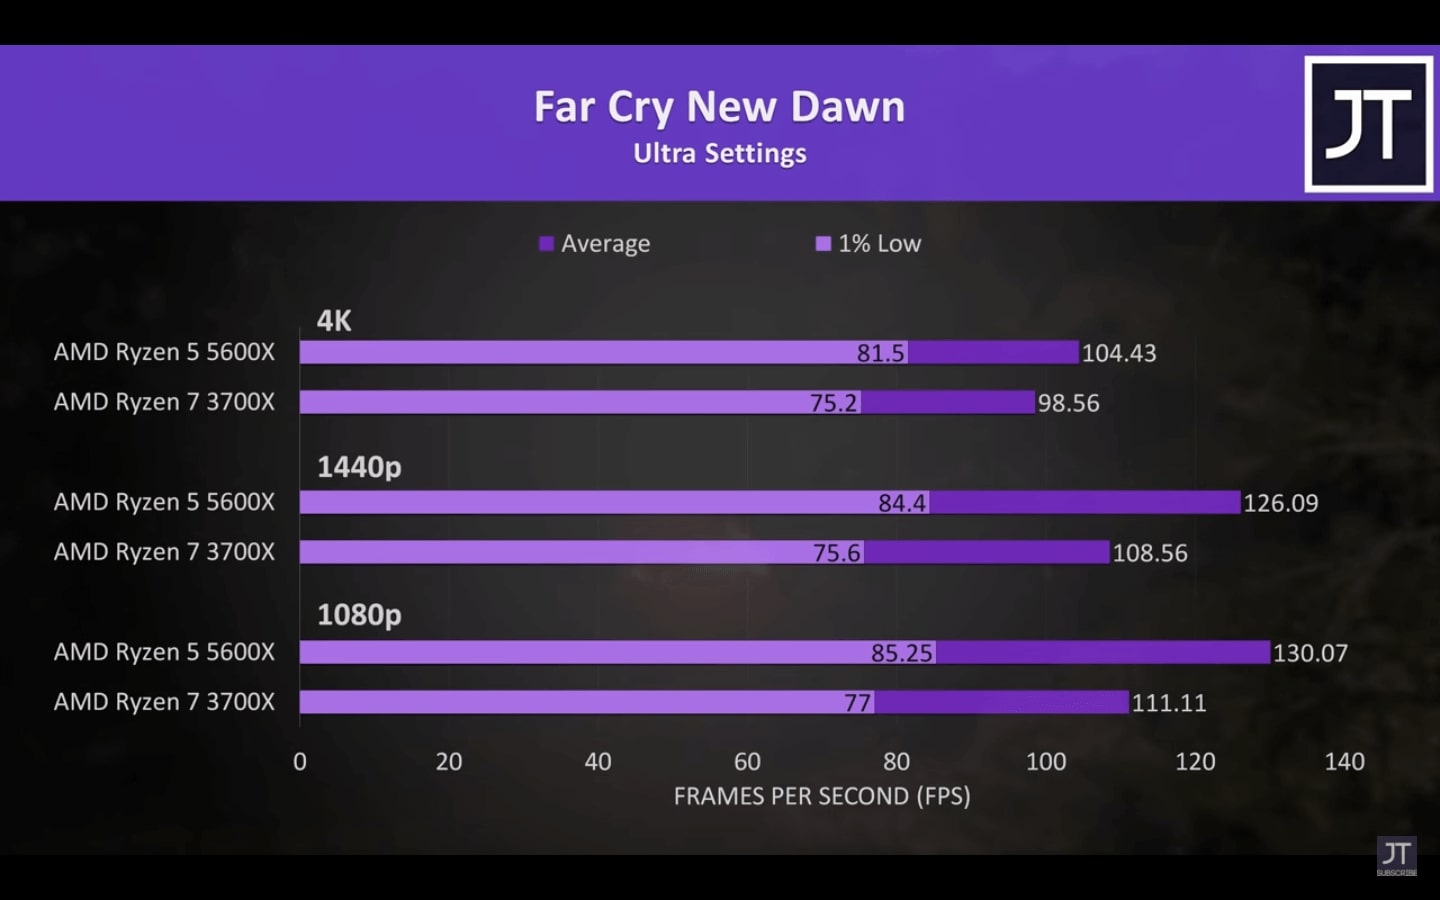  Ryzen 7 3700x vs Ryzen 5 5600x - Far Cry New Dawn